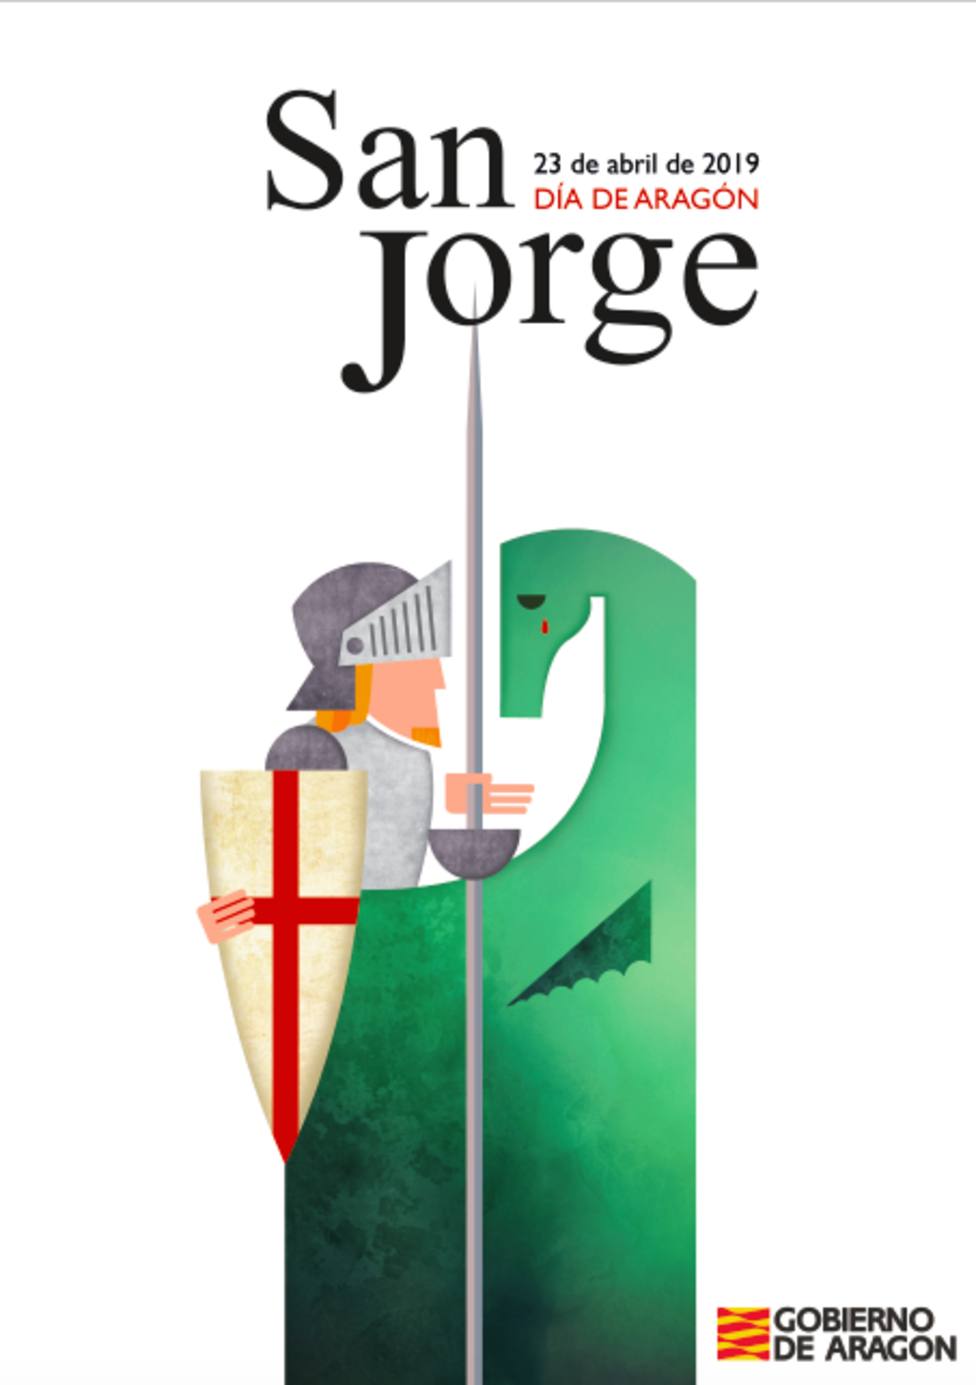 Cartel anunciador de San Jorge 2019, diseñado por la joven Natalia Castillo.